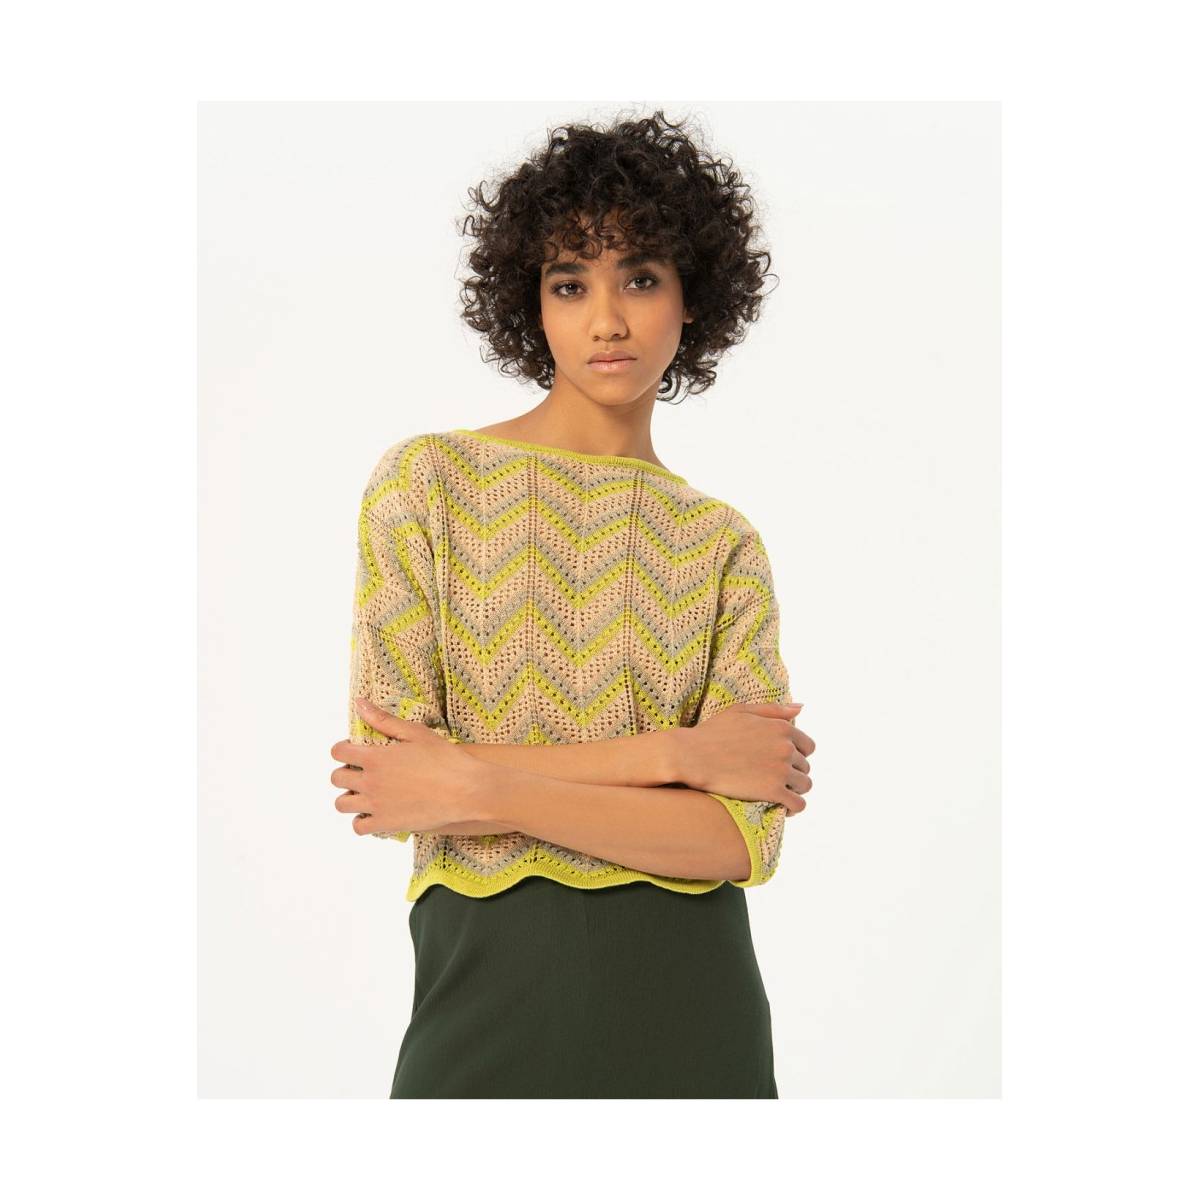 SURKANA  tricot pull's en gilets licht groen/color -  model jaru231 - Dameskleding tricot pull's en gilets groen